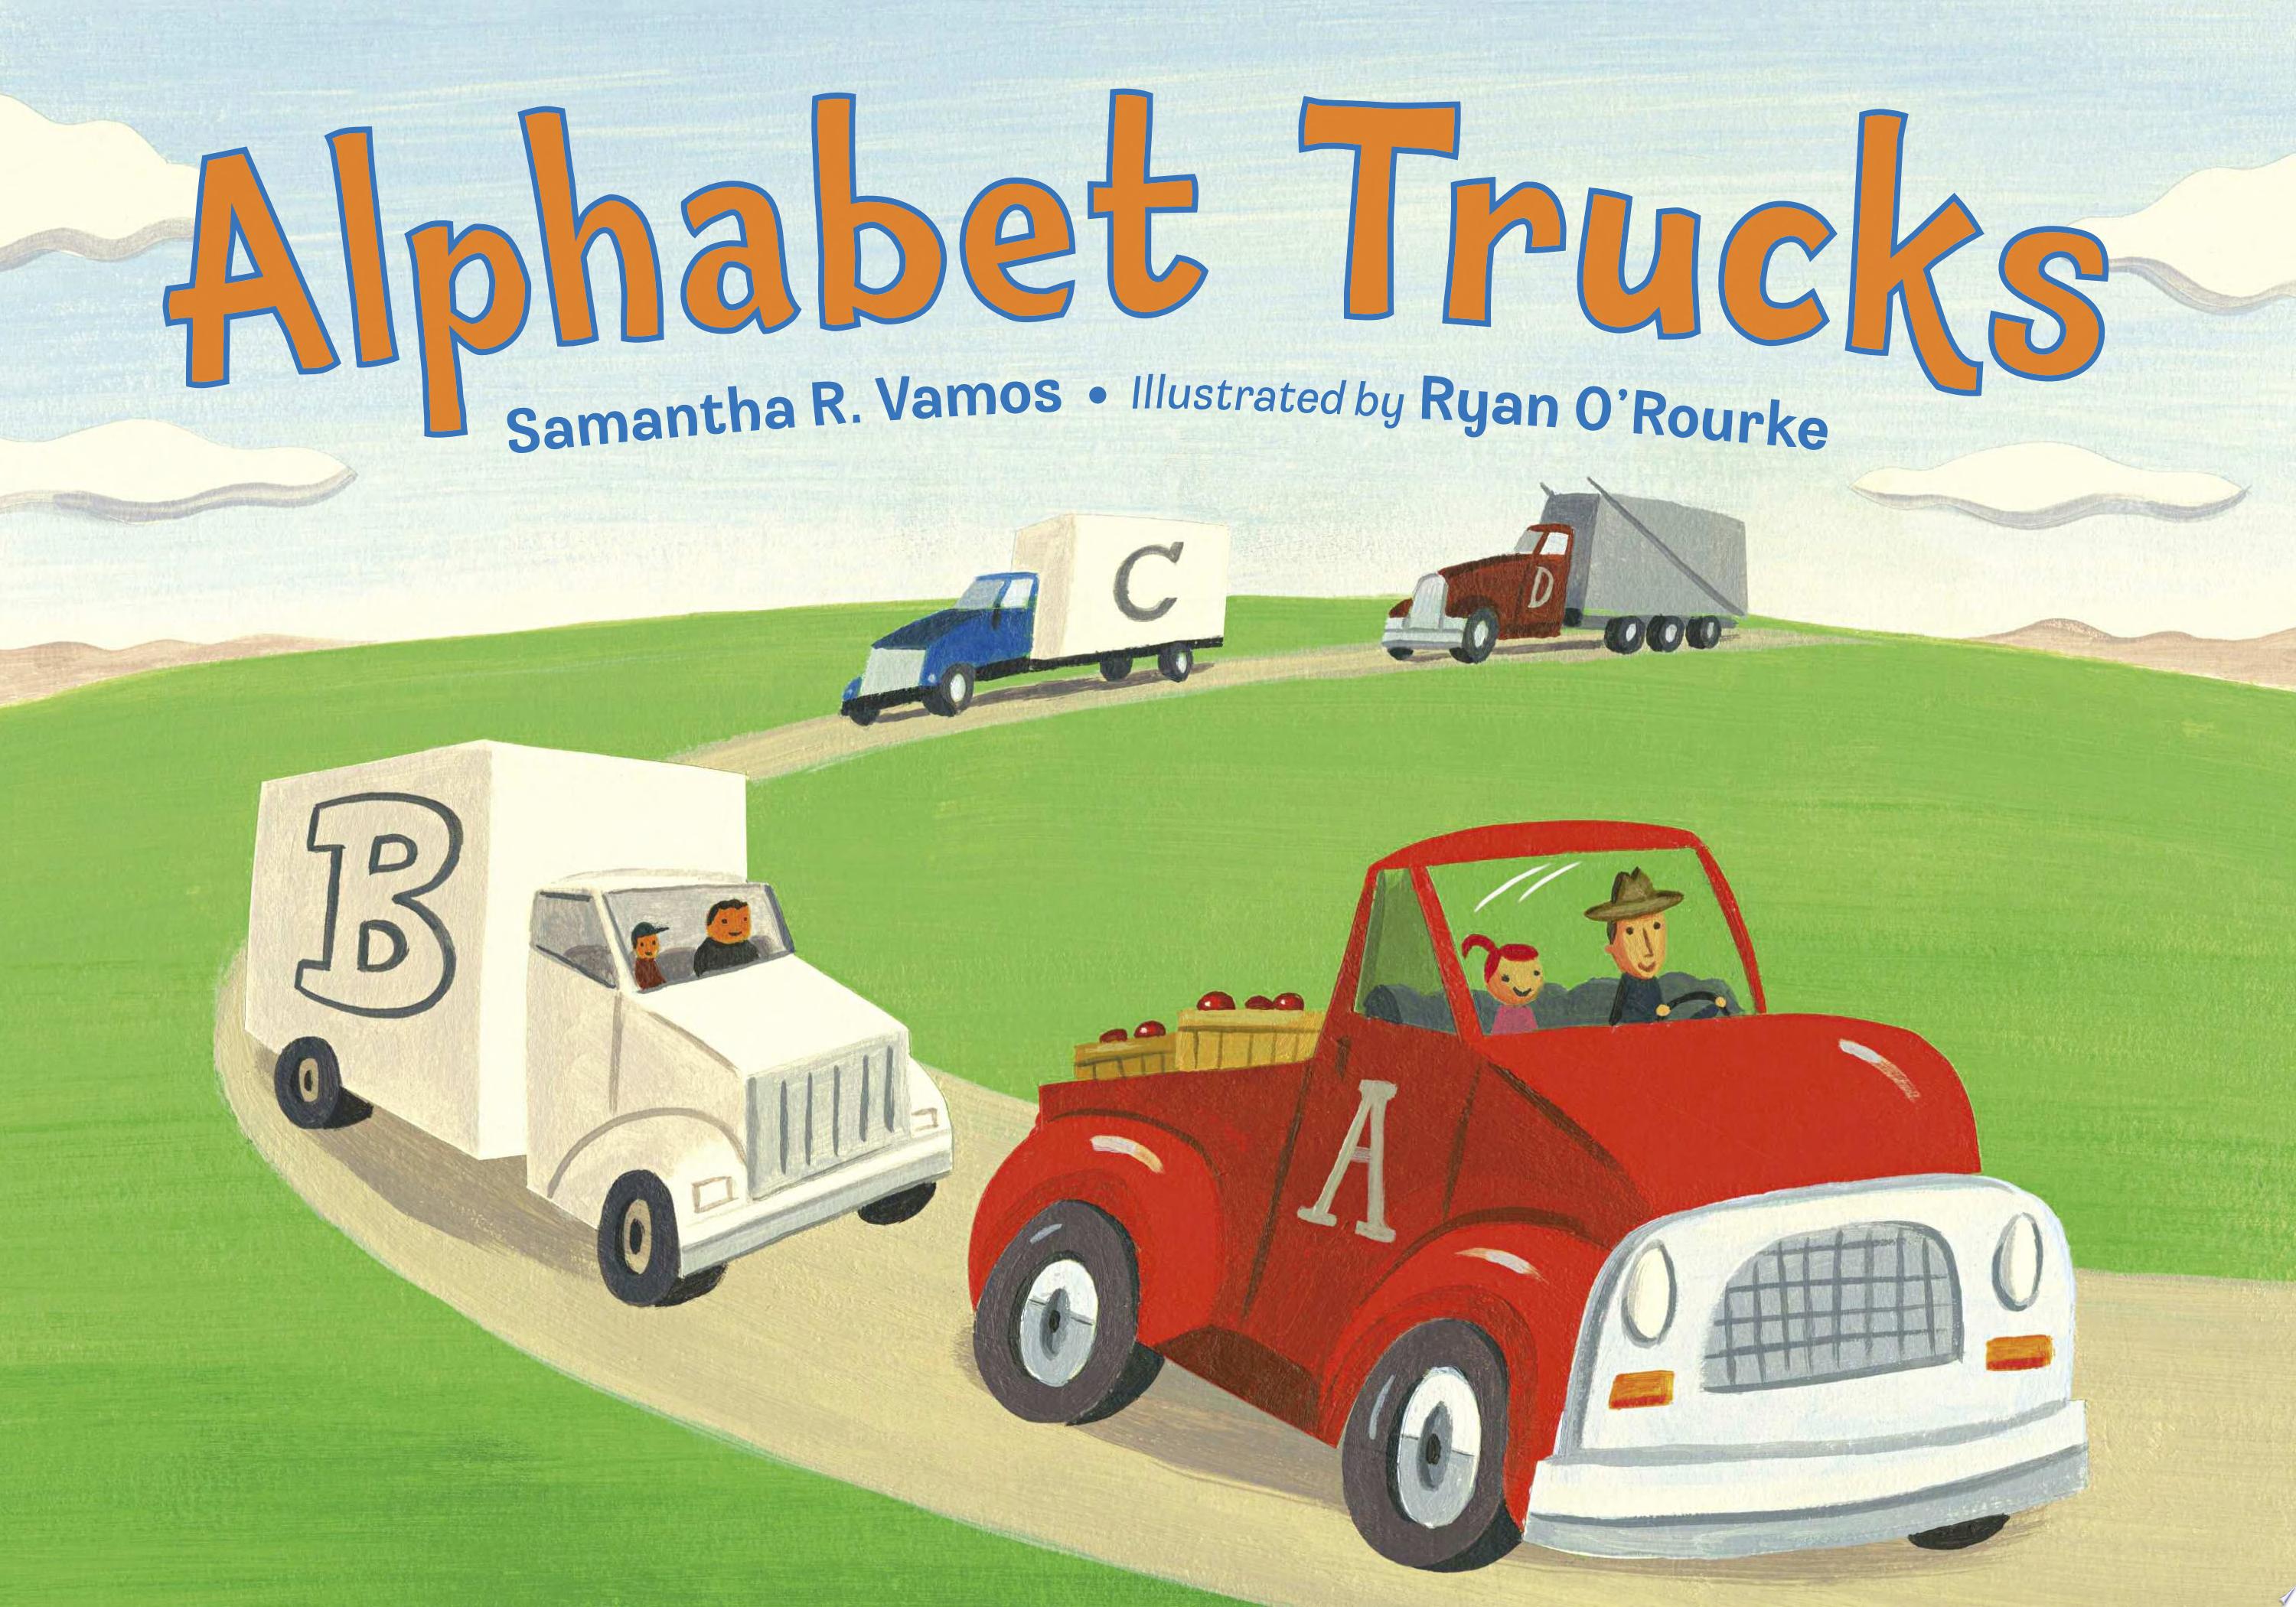 Image for "Alphabet Trucks"